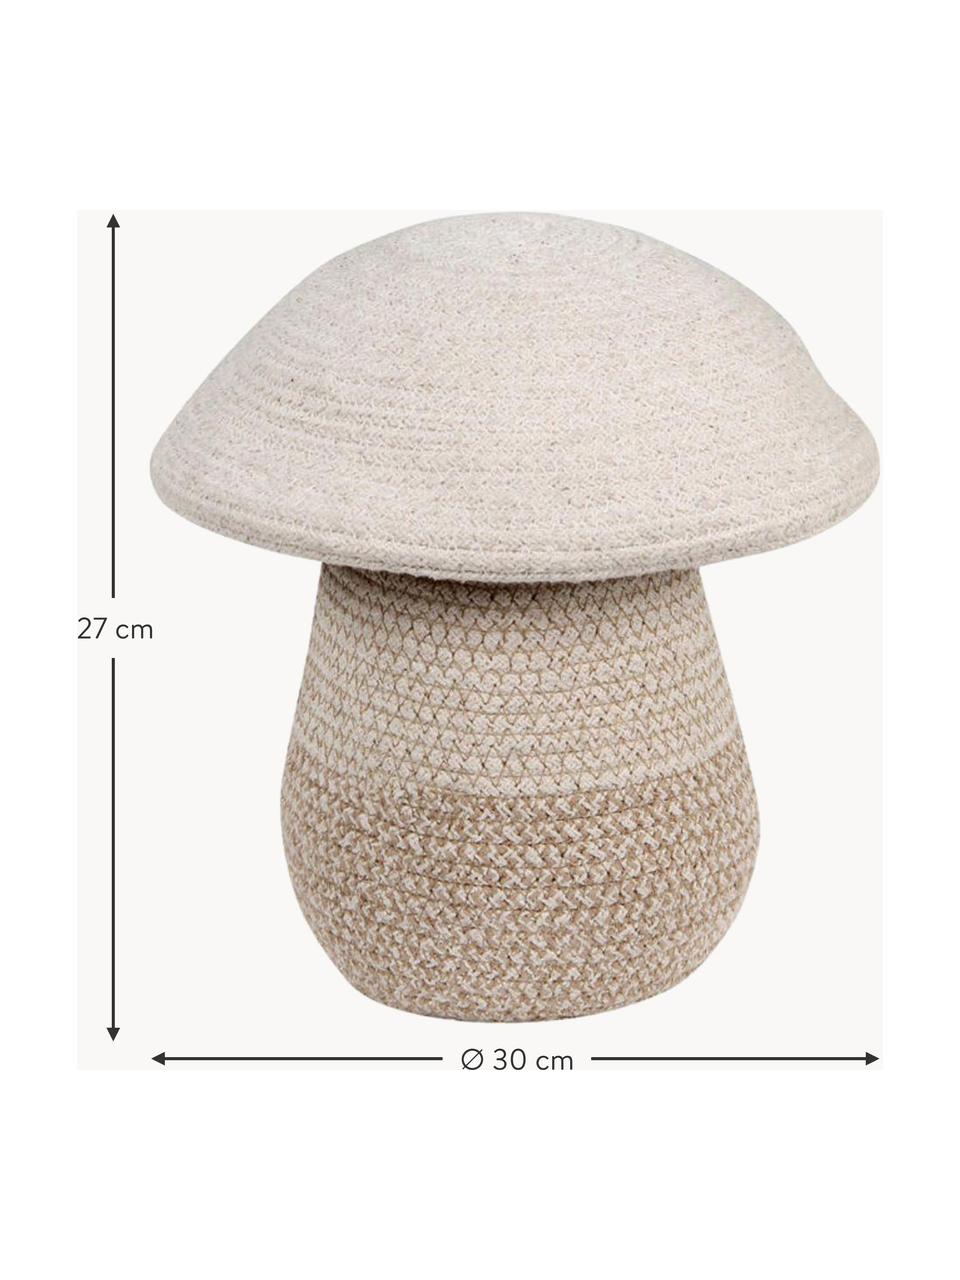 Ručně vyrobený dětský úložný koš s víkem Mushroom, V 27 cm, 97 % bavlna, 3 % syntetické vlákno, Krémově bílá, odstíny béžové, Ø 30 cm, V 27 cm